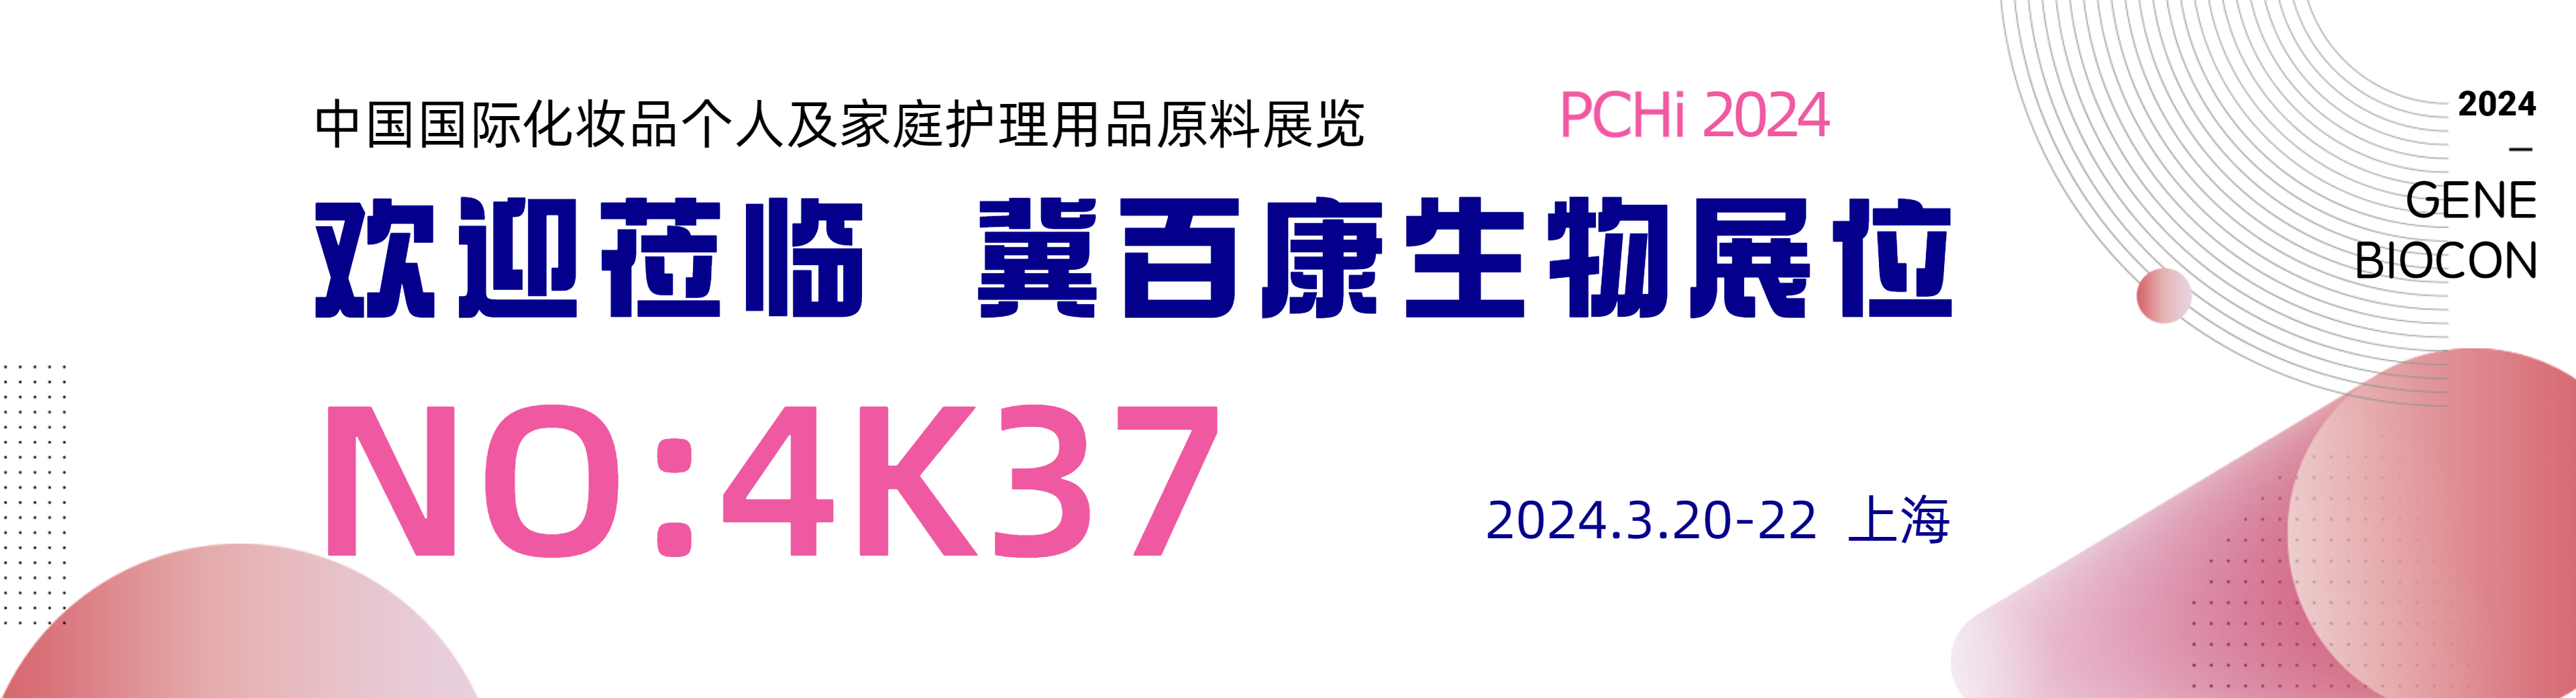 PCHi 2024